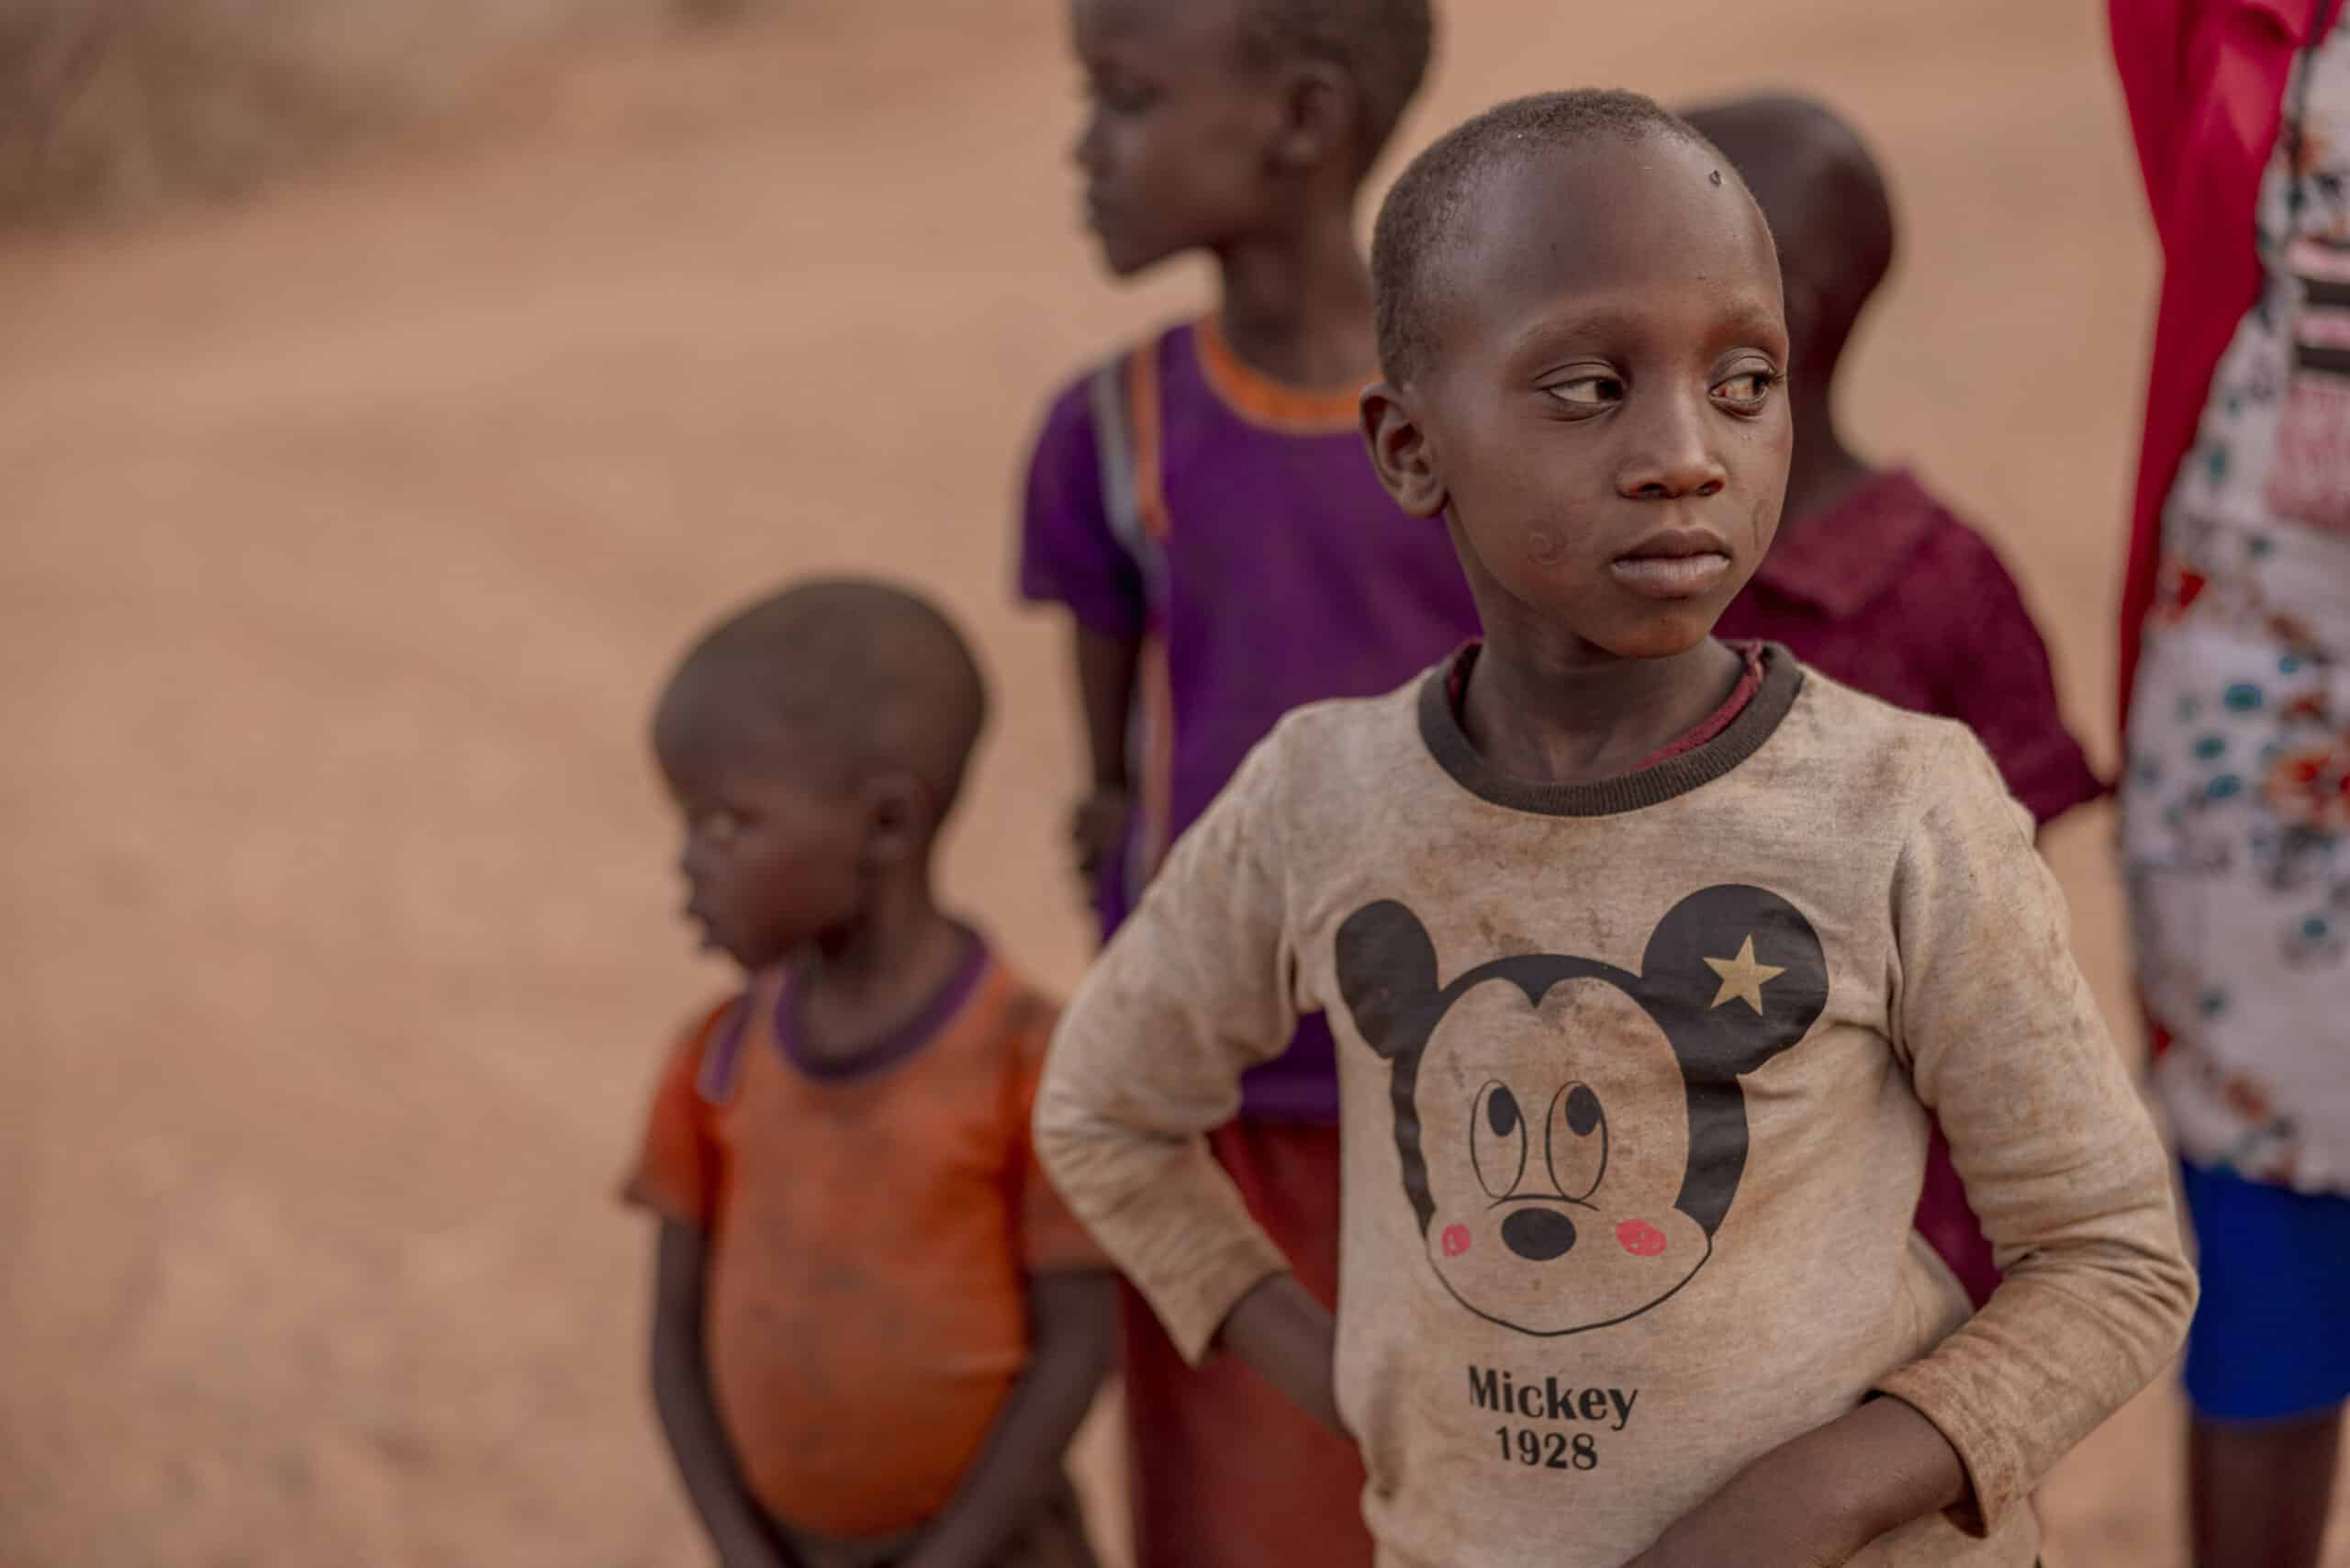 Eine Gruppe von Kindern mit einem Jungen im Vordergrund, der ein Mickey-Mouse-T-Shirt trägt und nachdenklich in einer staubigen Gegend steht. Um ihn herum sind andere Kinder zu sehen. © Fotografie Tomas Rodriguez